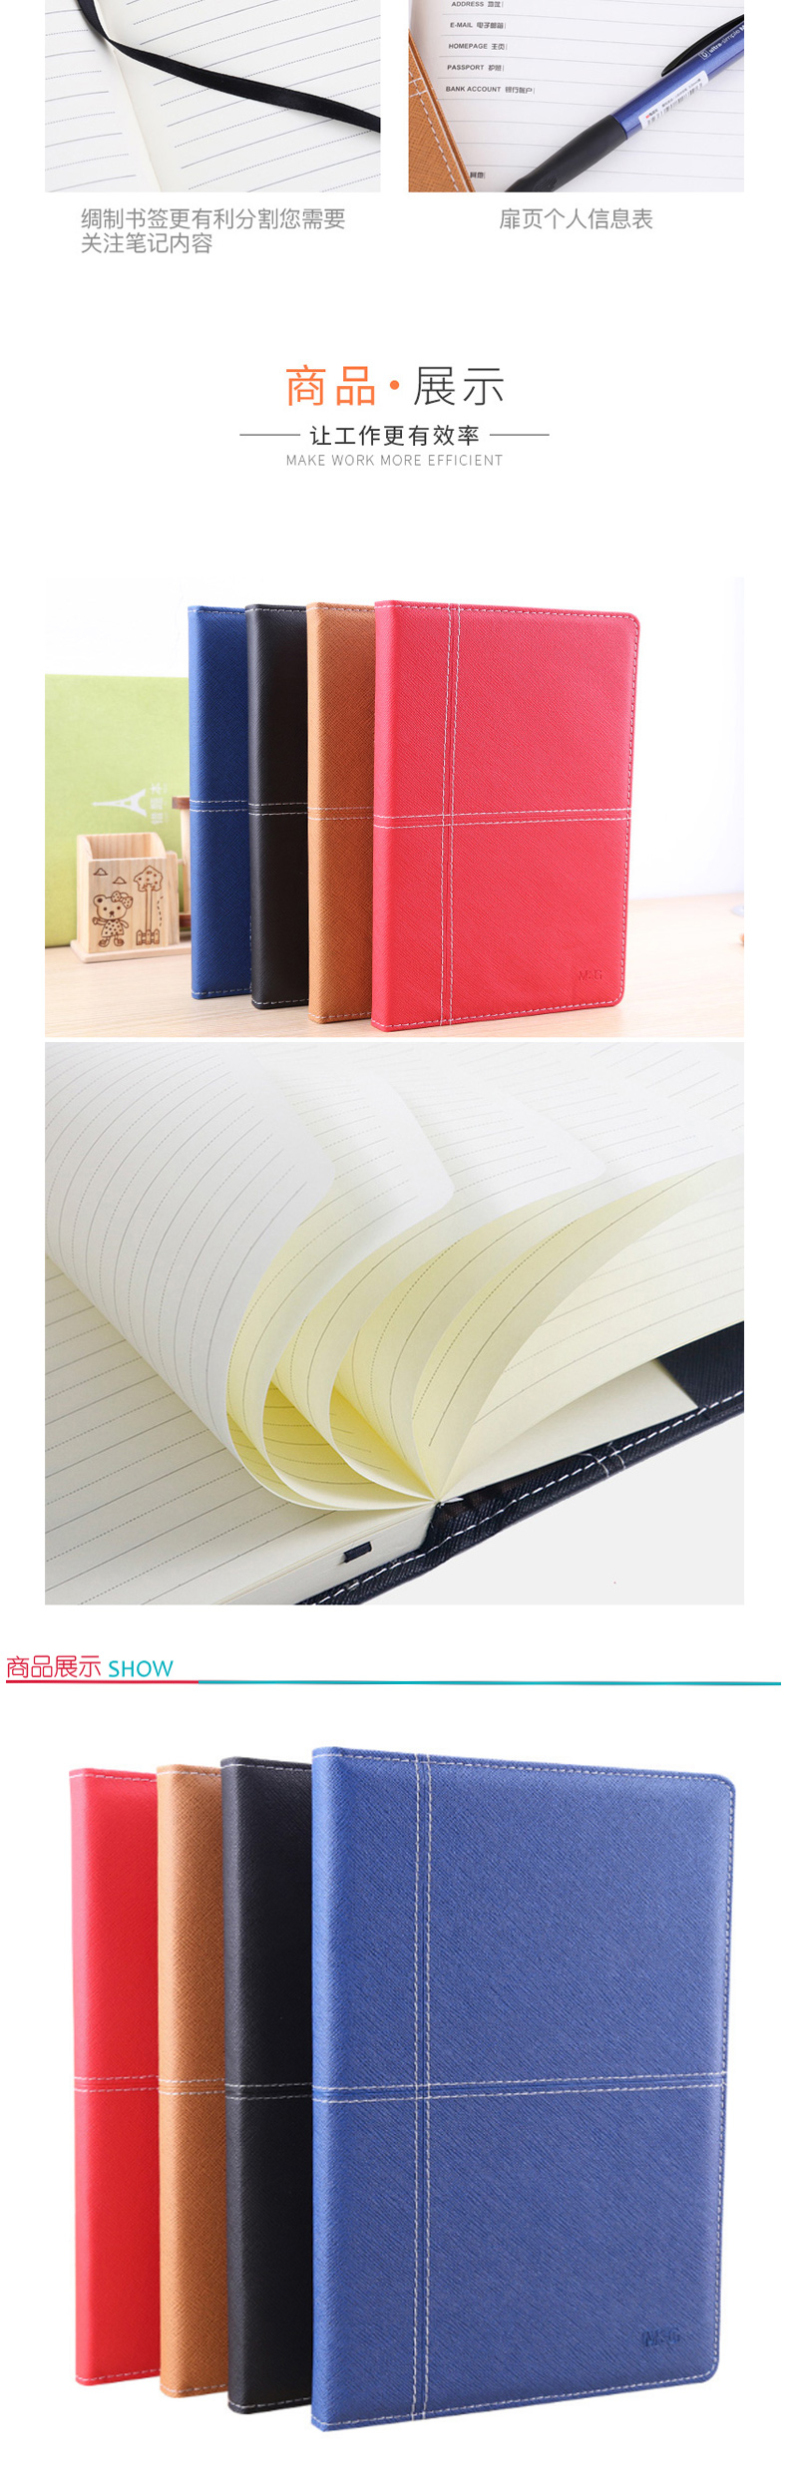 晨光 M＆G 雅致办公皮革胶套本 APY4K361 B5 (黑色、红色、蓝色、黄色) 120页/本 (颜色随机)